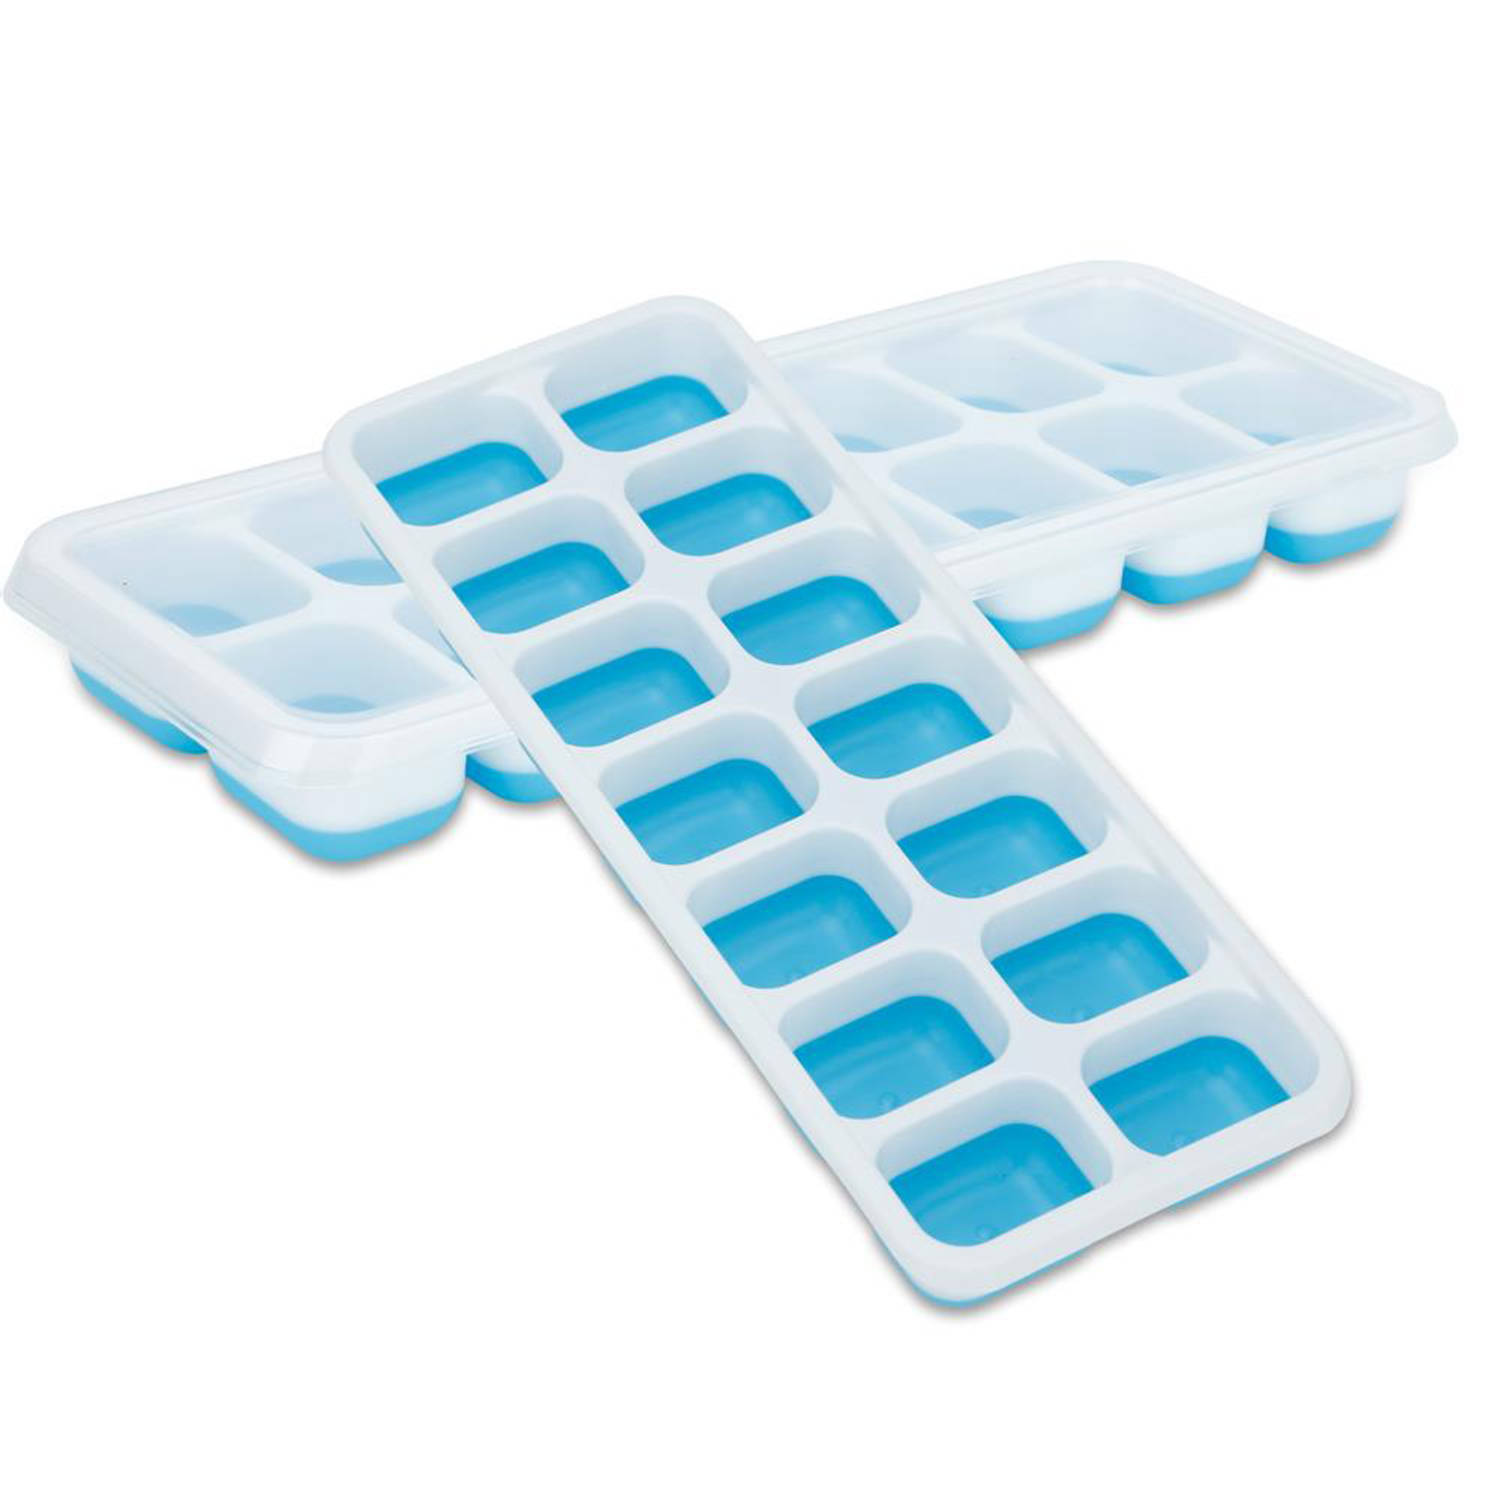 INTIRILIFE IJsblokjesvormen in blauw, set van 4 à 14 vakken, ijsblokjesvormen met deksel, afsluitbaar en stapelbaar, met flexibele bodem